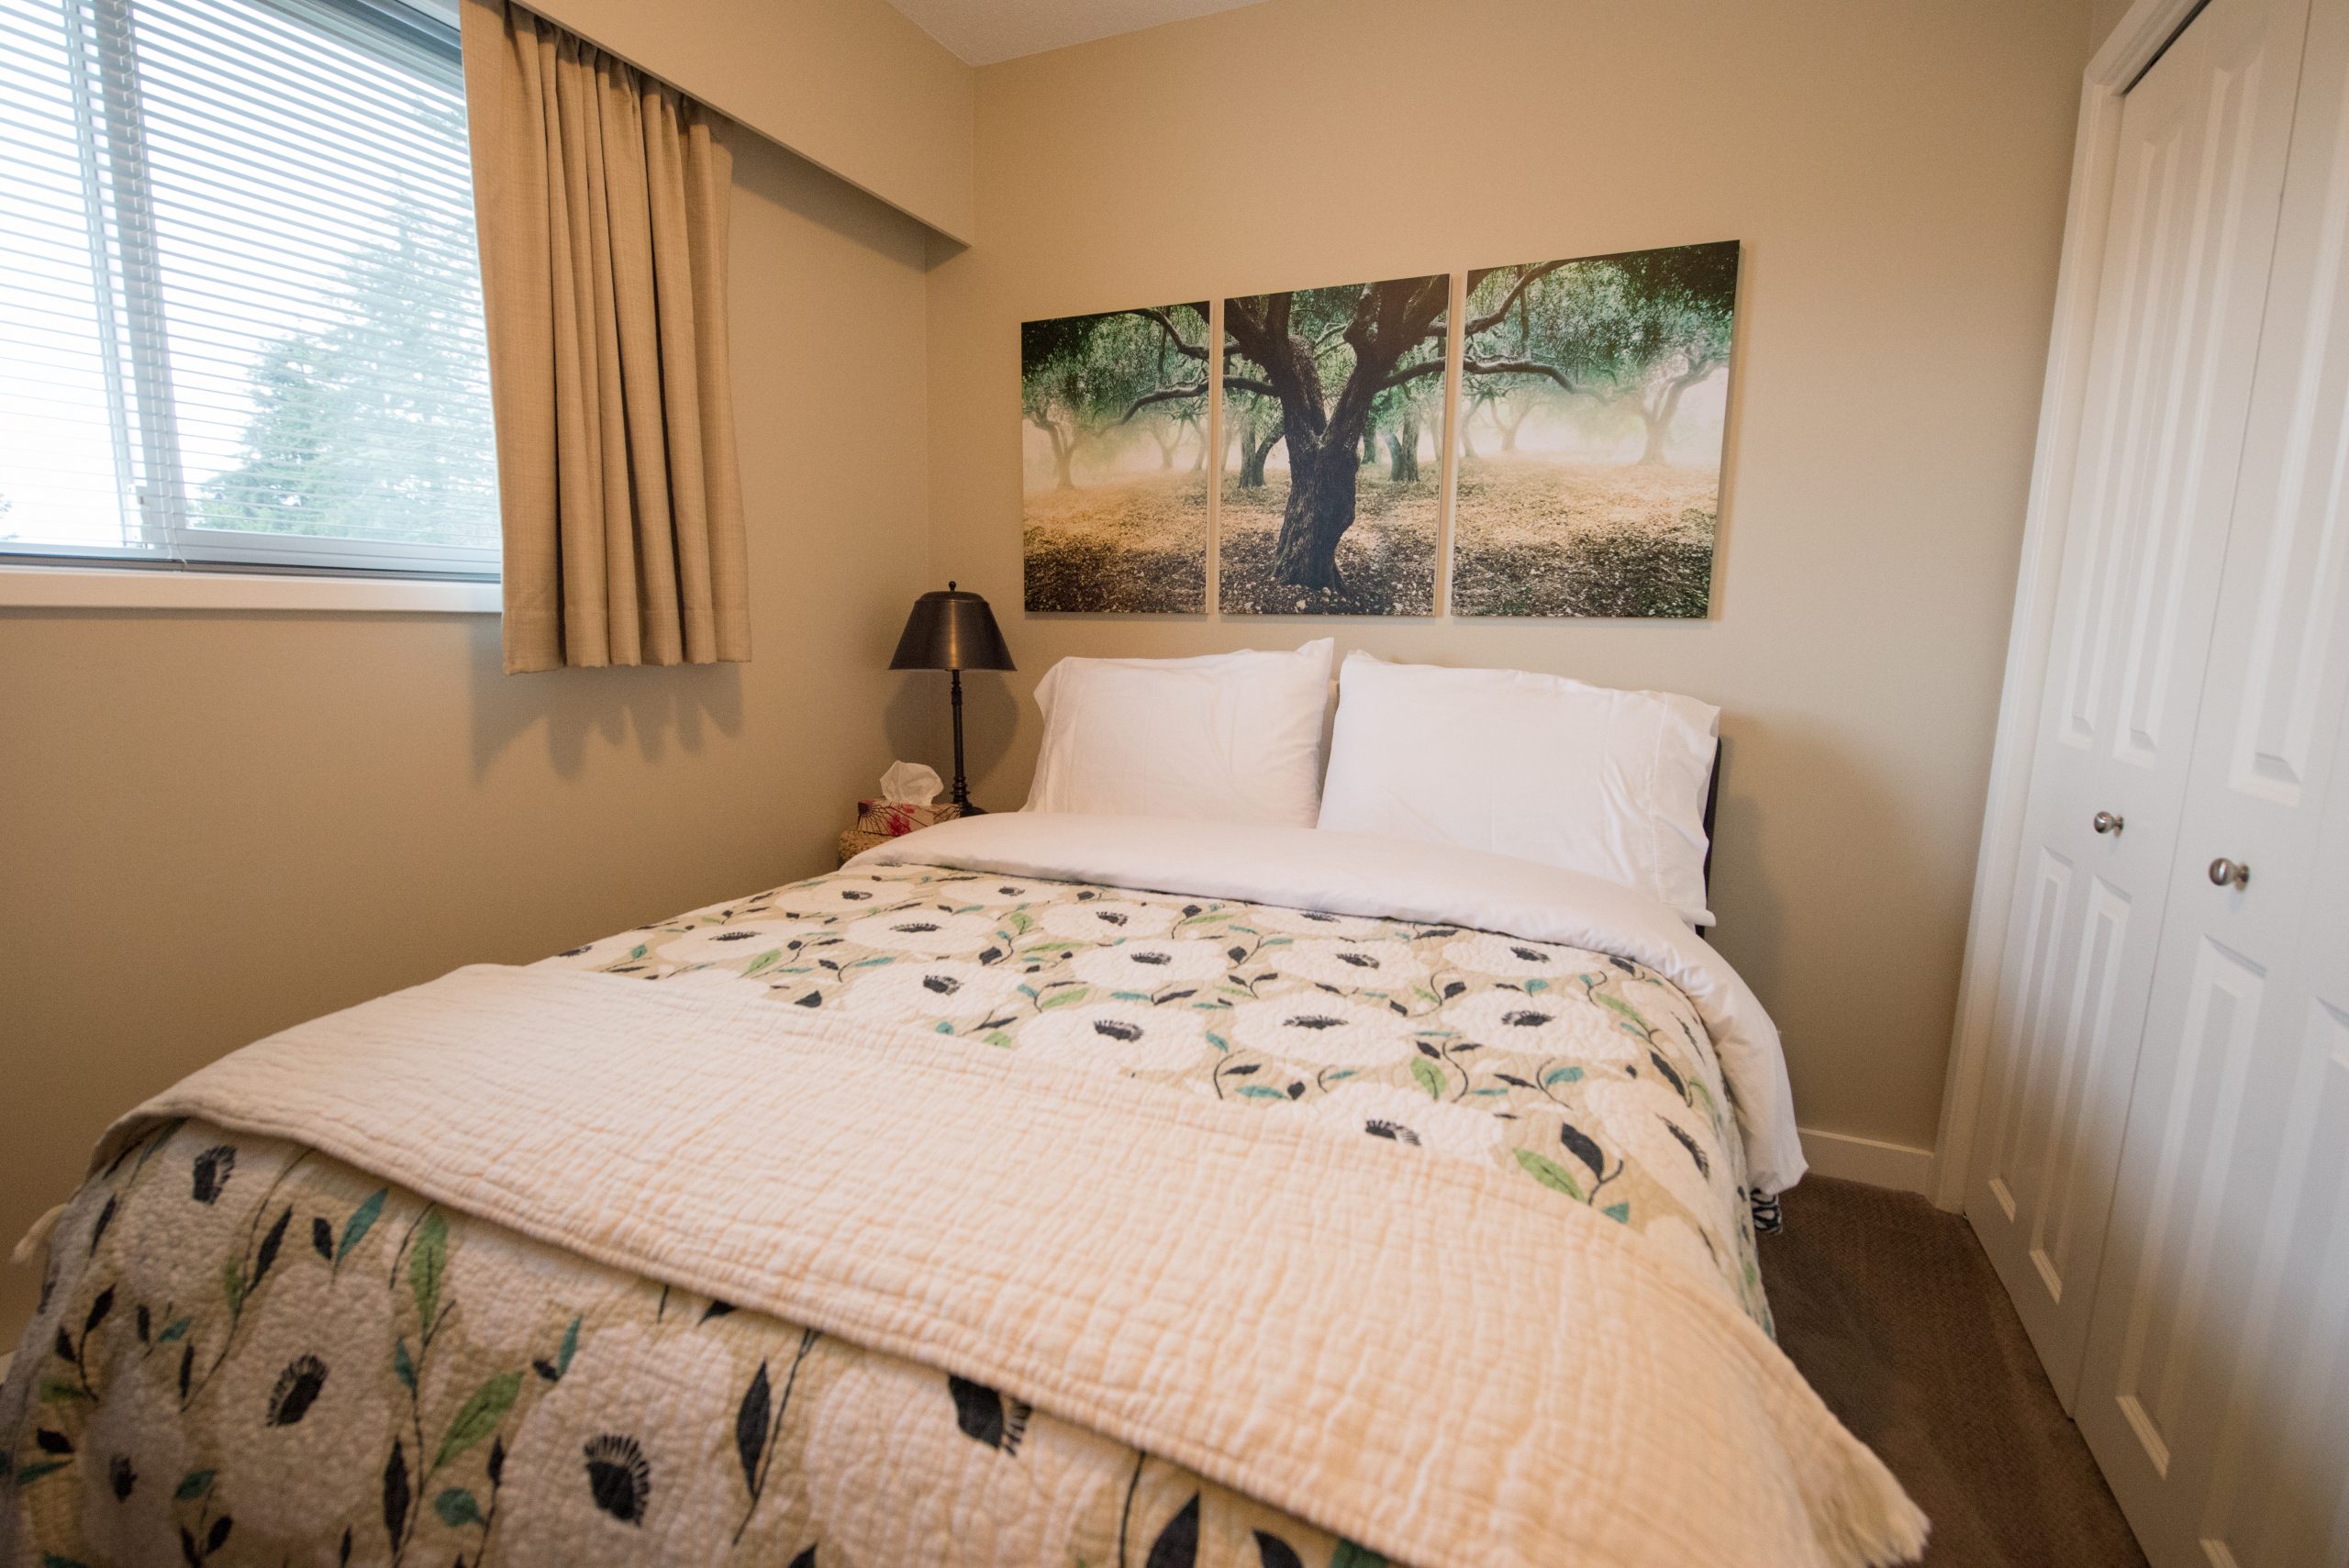 sequoia suite bedroom with queen bed